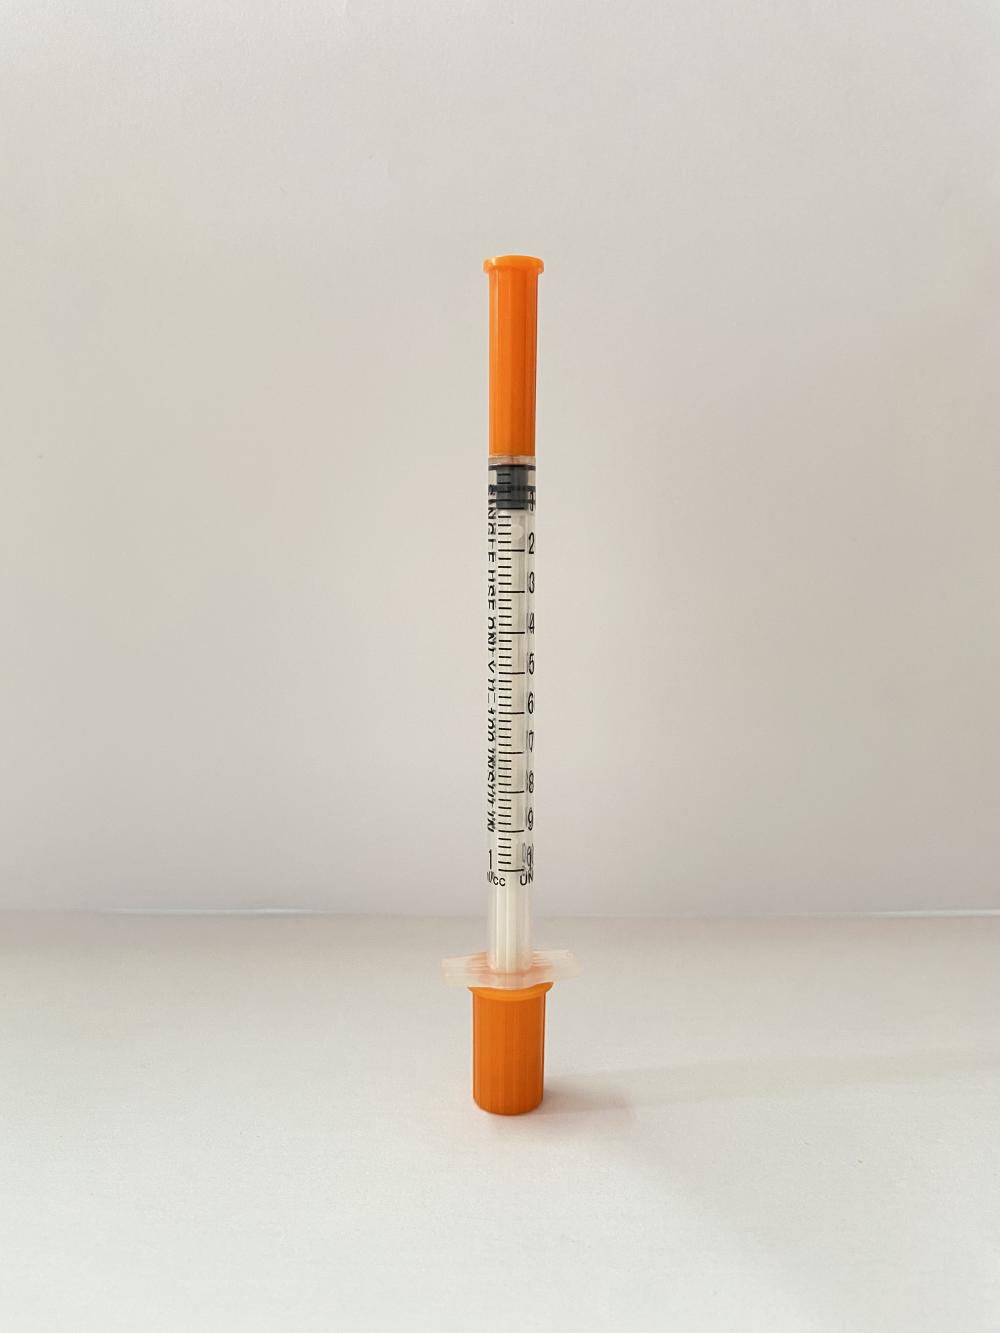 حقنة الأنسولين رخيصة الثمن 1 مل معقمة طبية يمكن التخلص منها